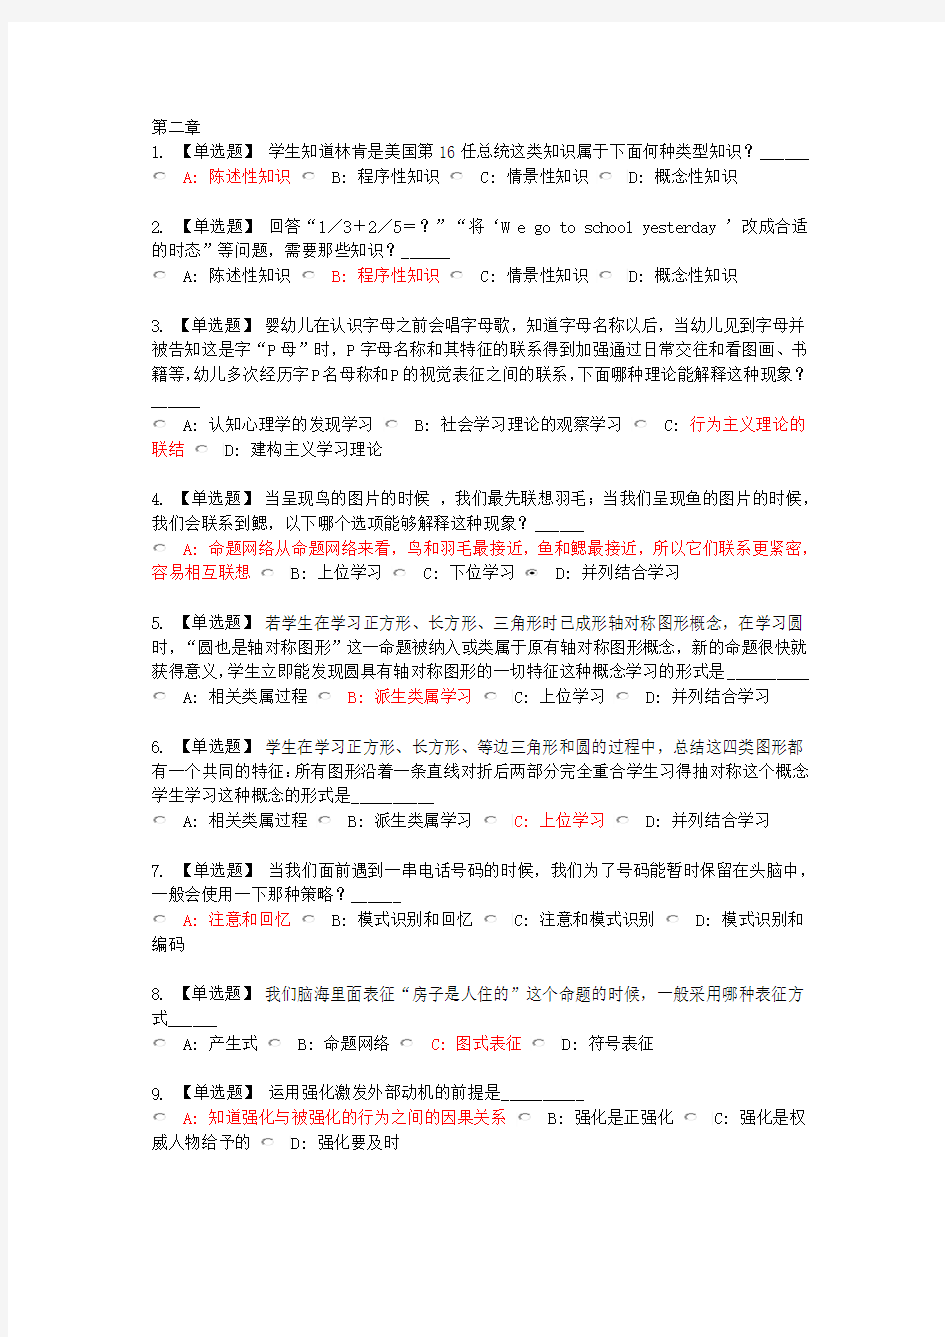 李晓东继续教育教育心理学考试习题全集113章